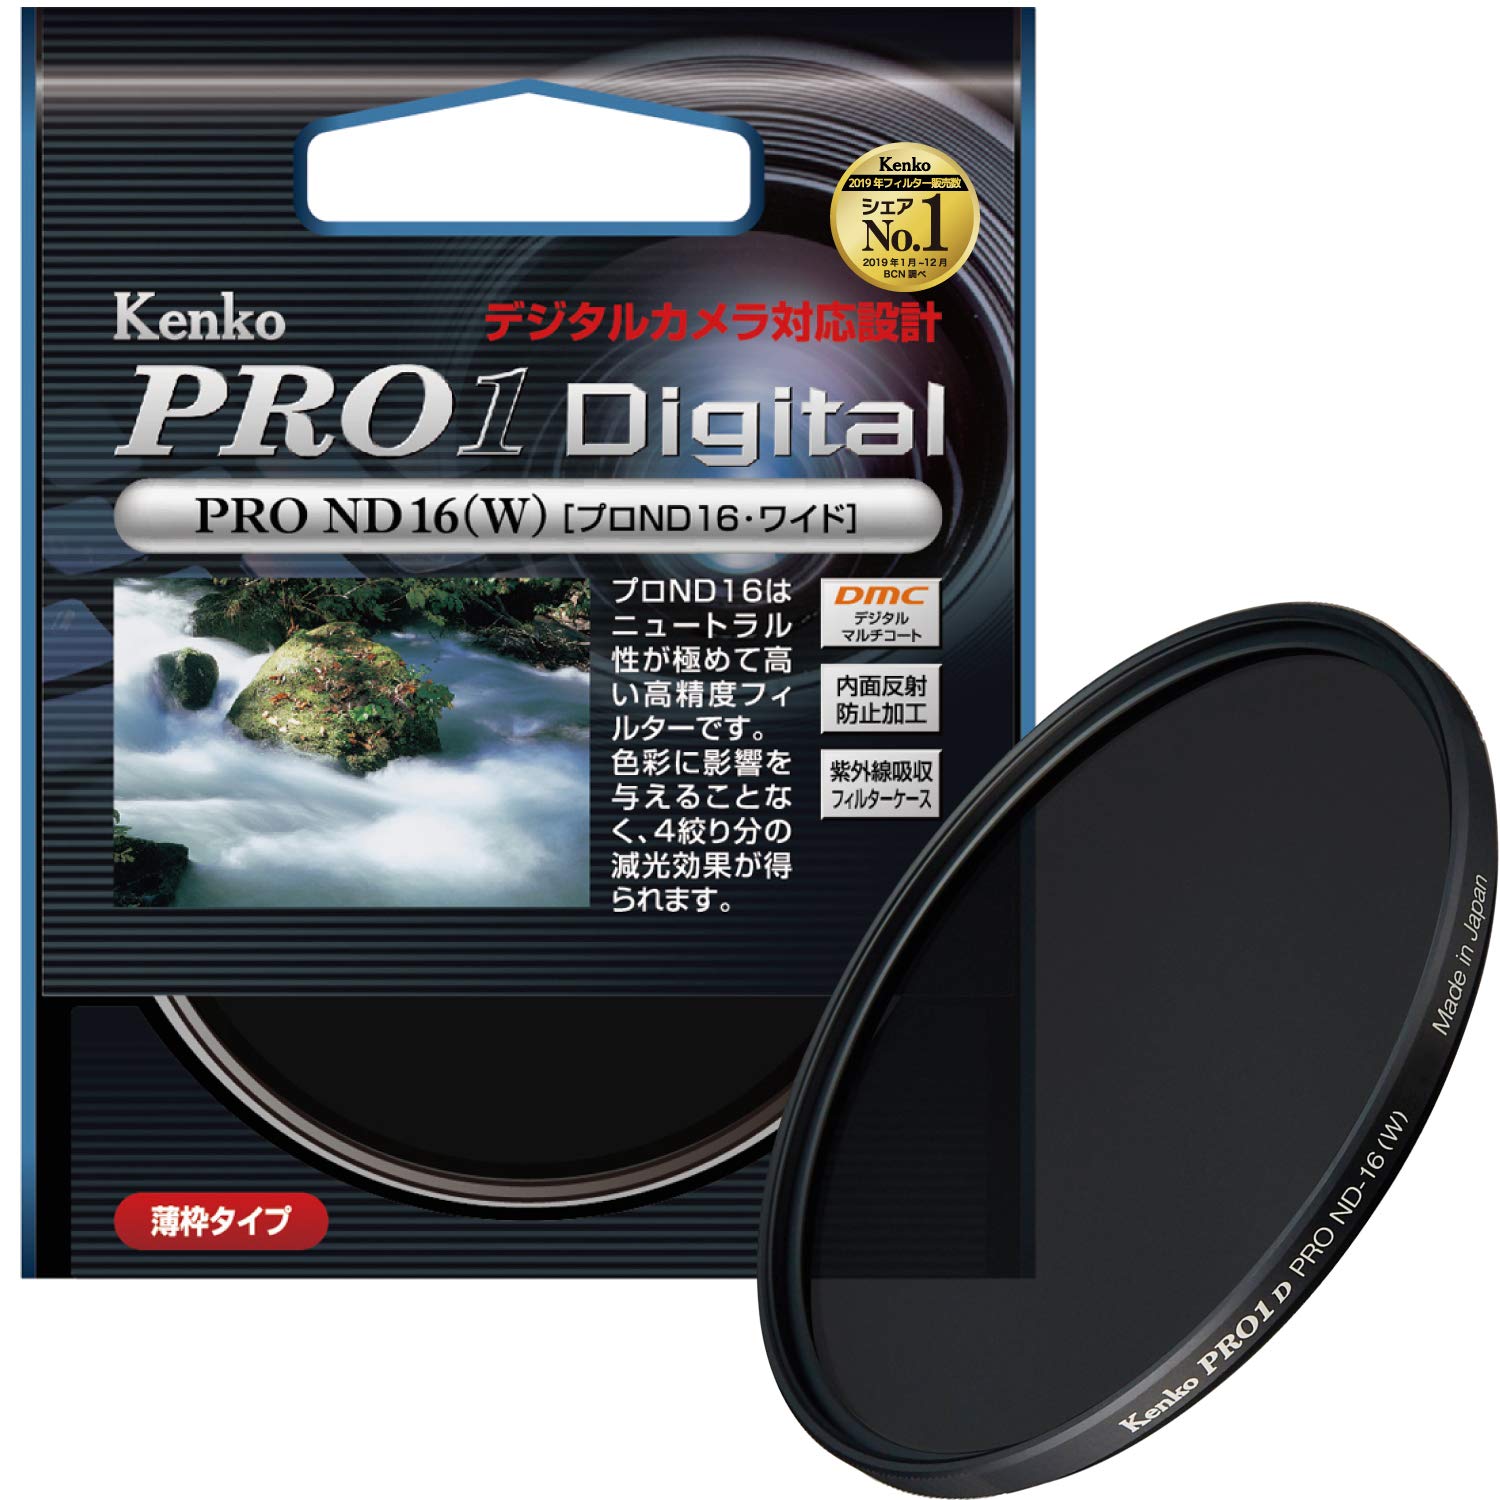 Kenko カメラ用フィルター PRO1D プロND16 (W) 58mm 光量調節用 258446